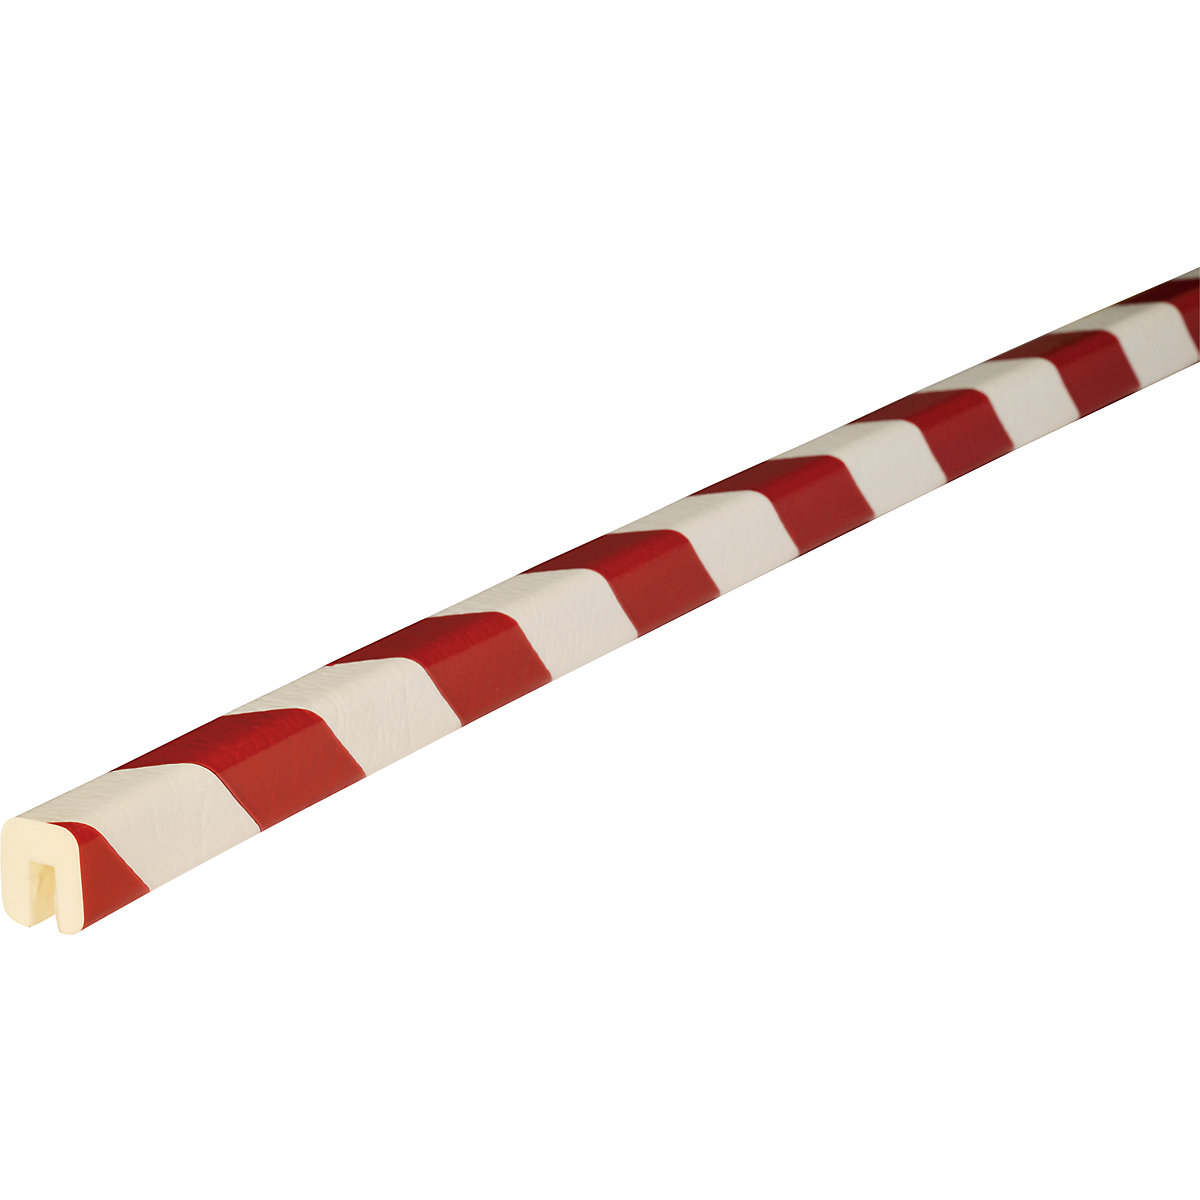 Cantoneras de protección Knuffi® – SHG, tipo G, 1 rollo de 5 m, en rojo y blanco-21